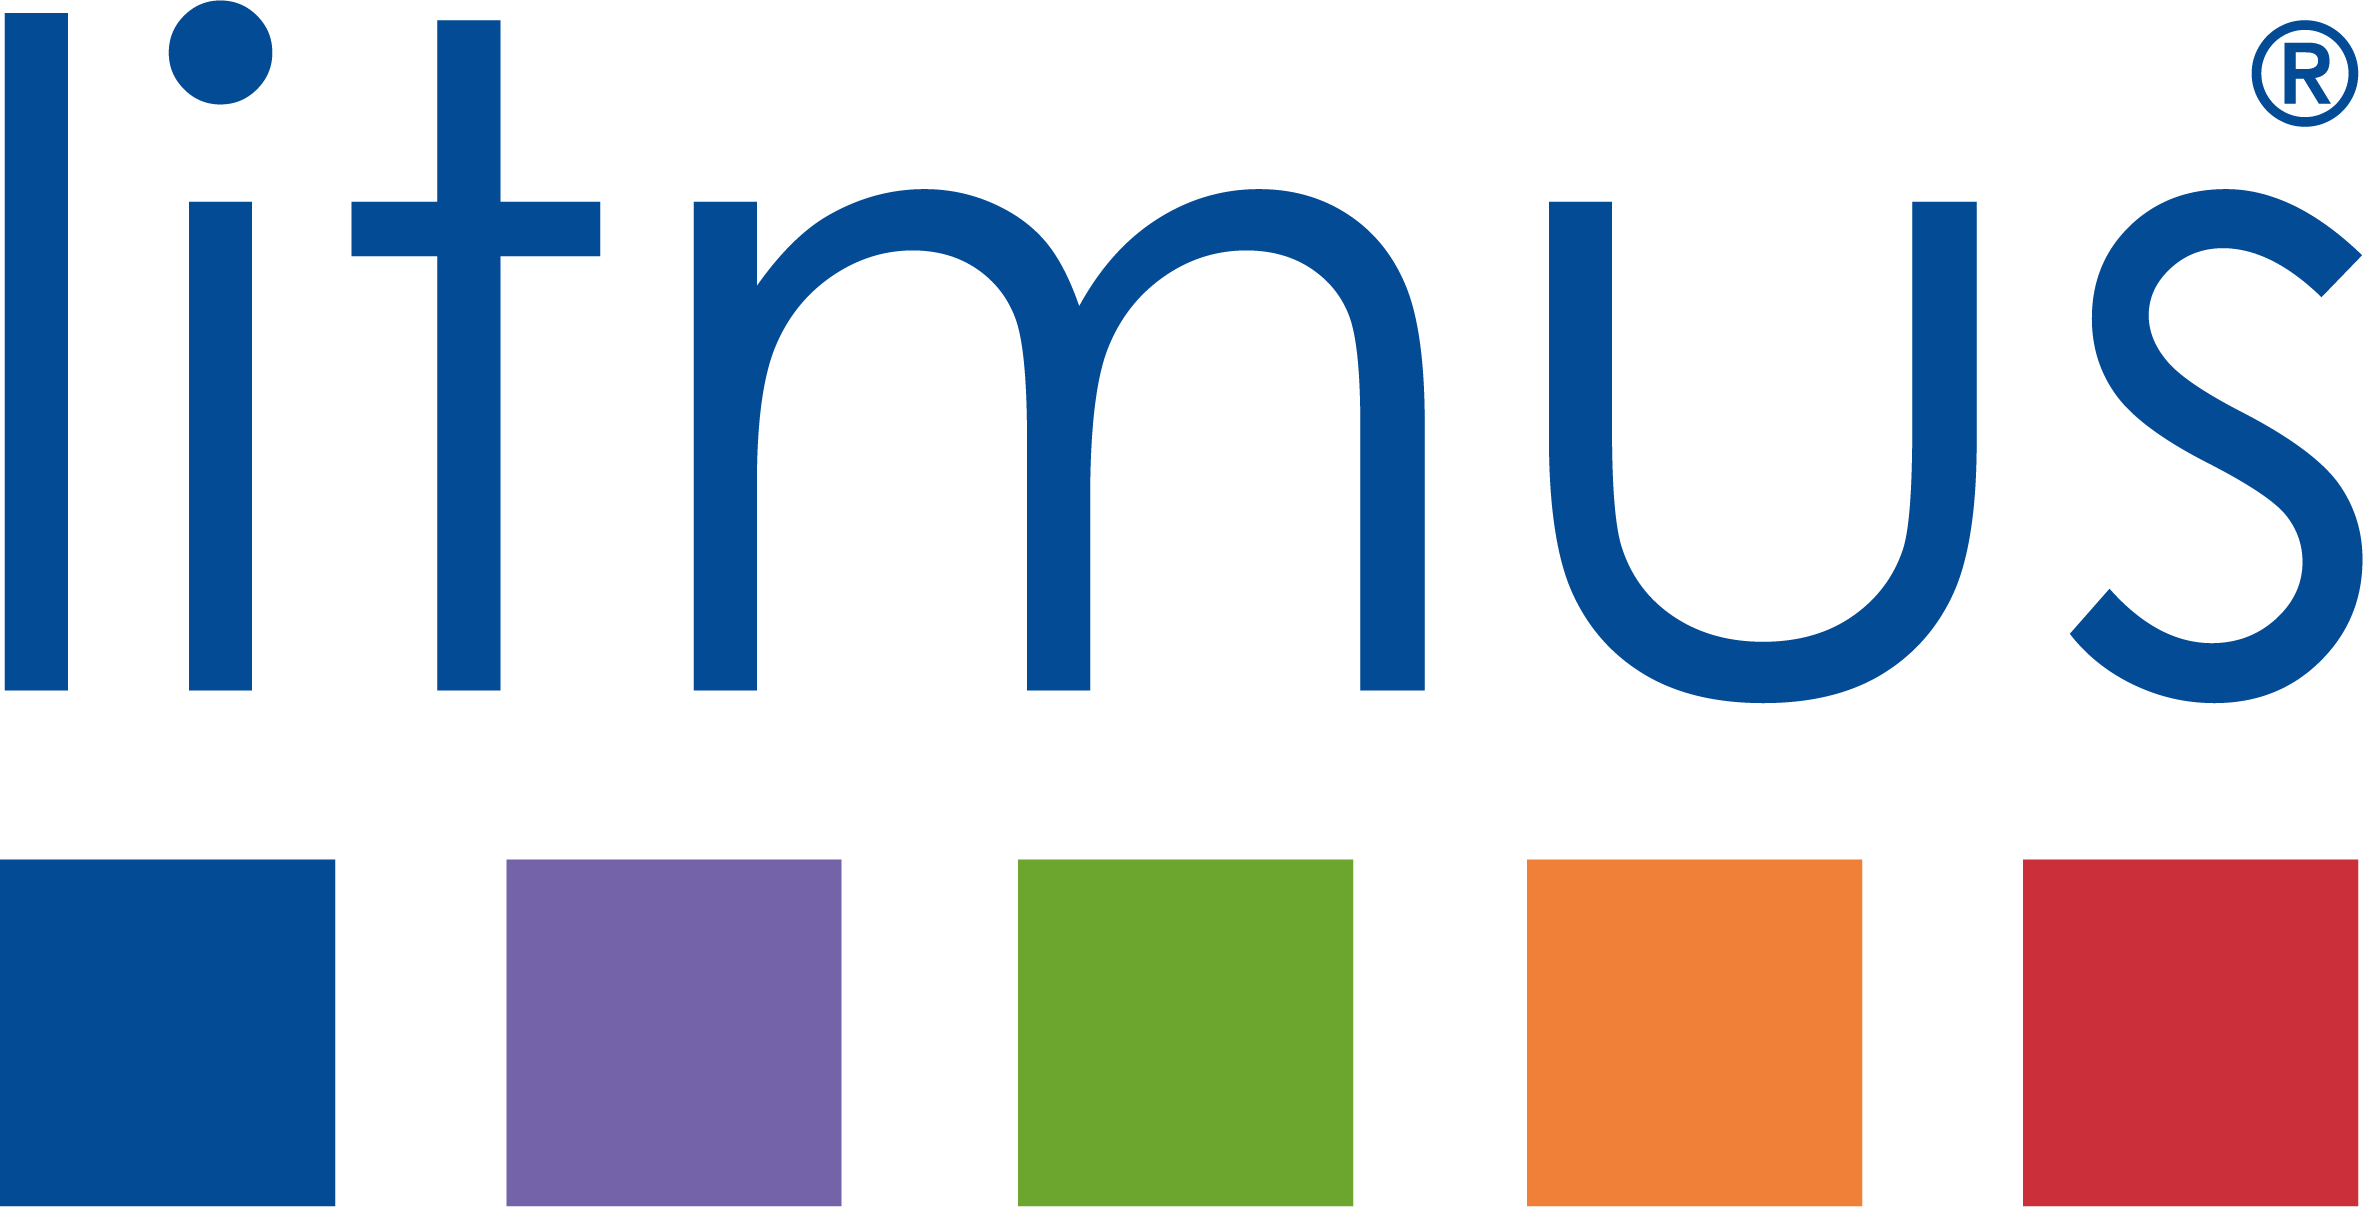 Litmus Partnership